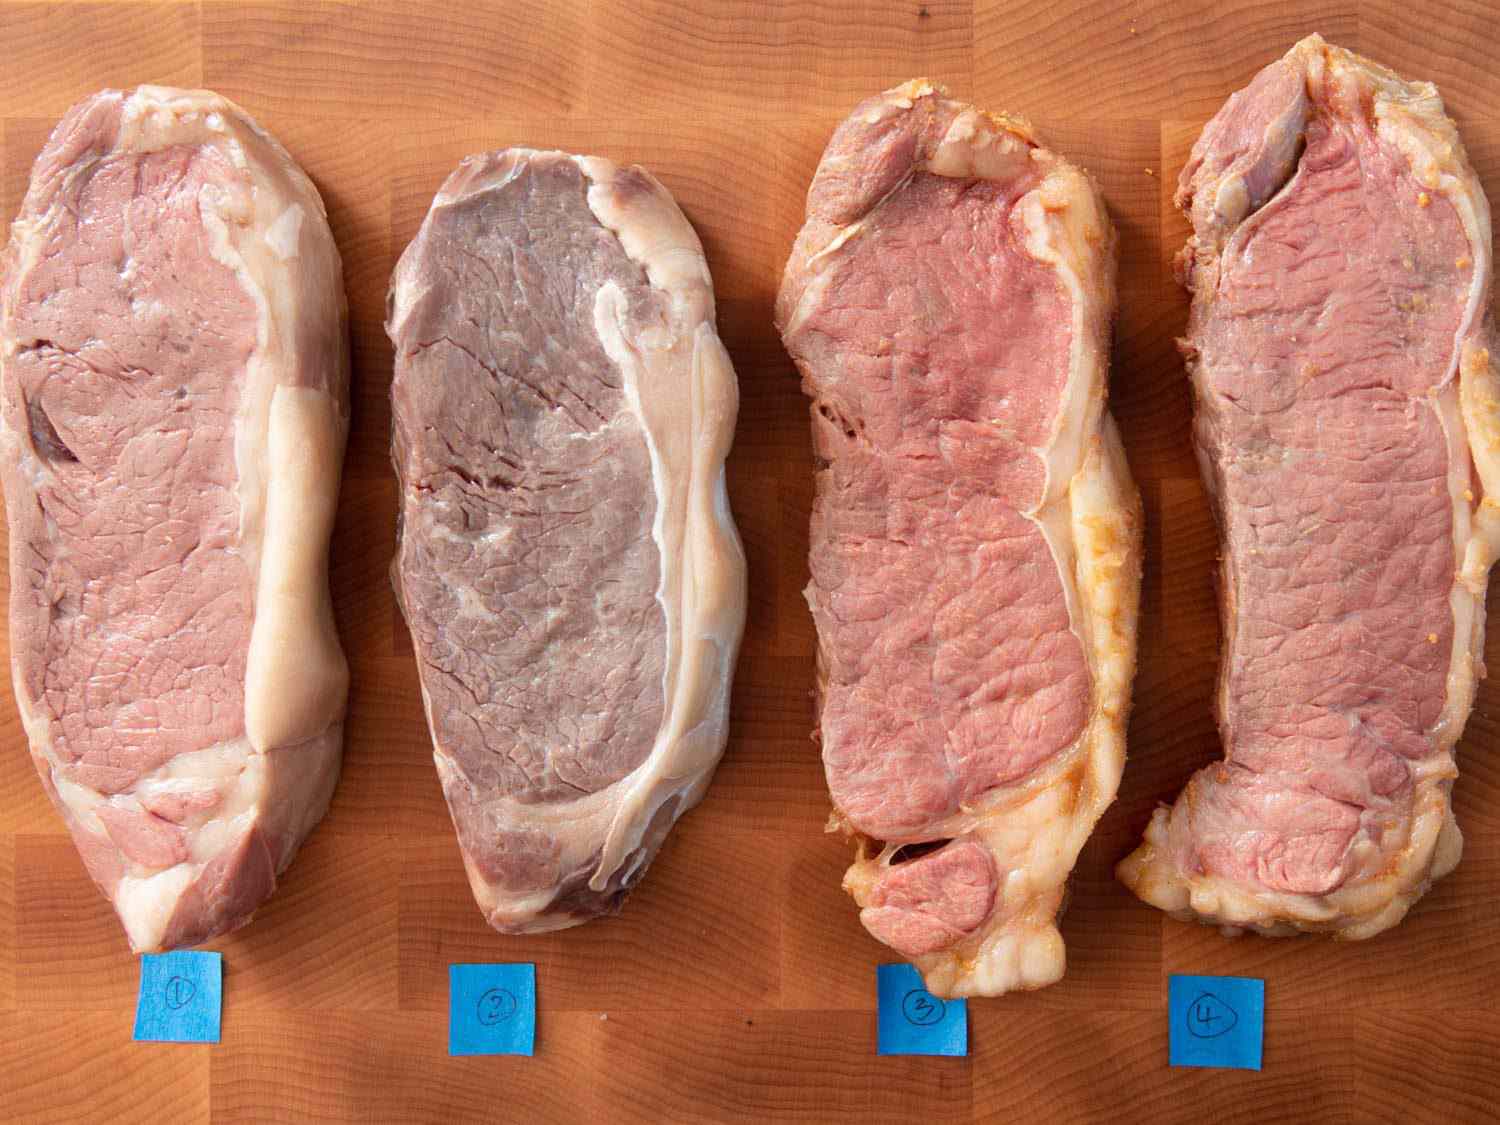 俯视四条带牛排烹饪真空，由编号胶带在砧板上识别。左边的第二块牛排比其他三块要灰白得多。